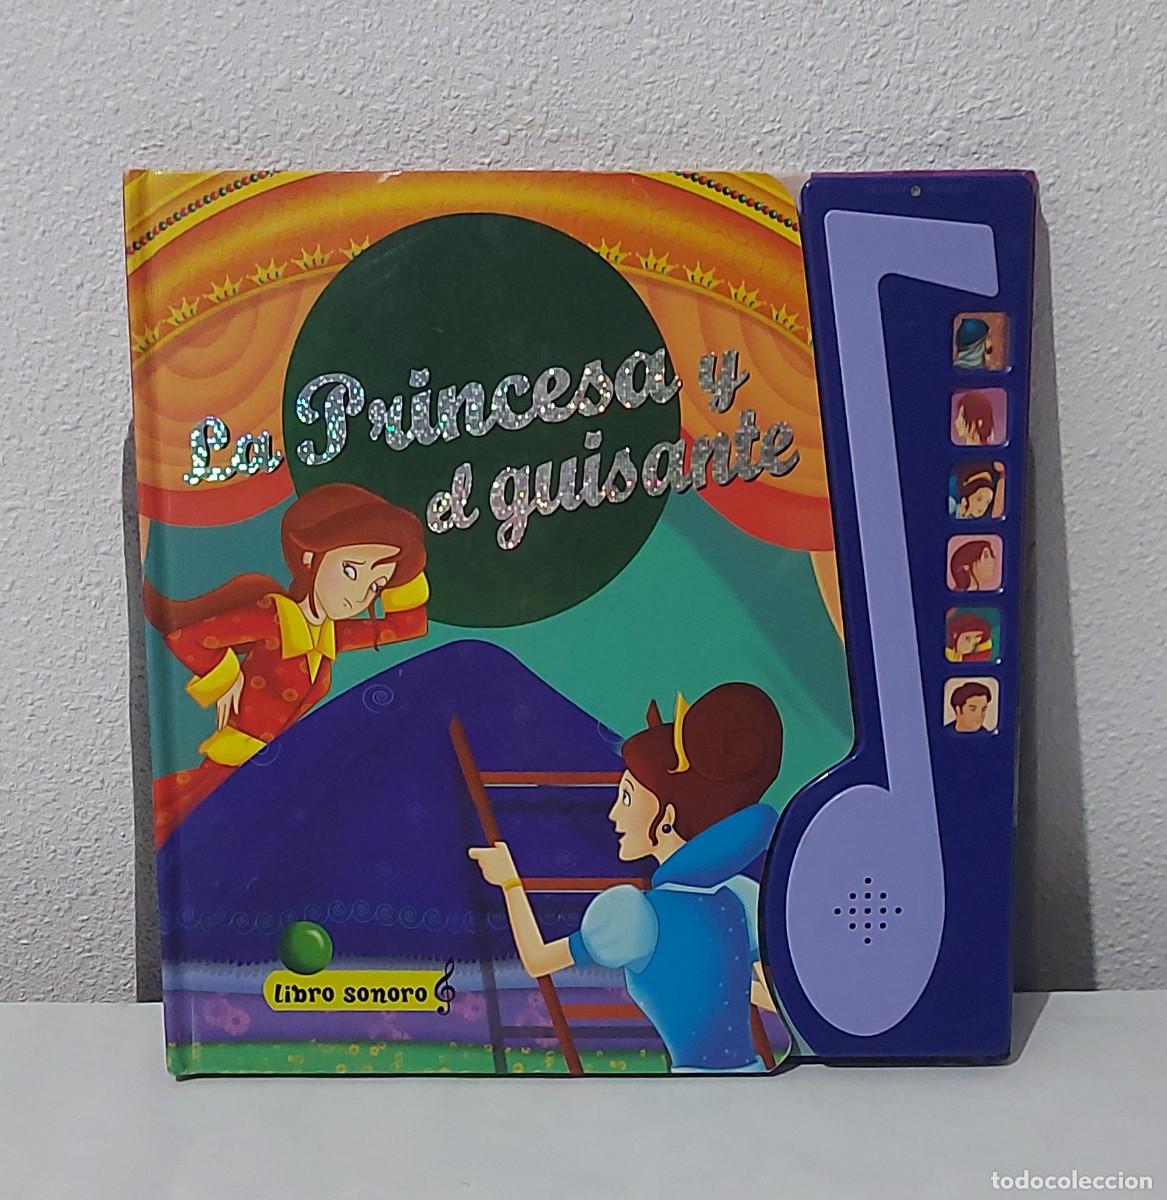 libro sonoro la princesa y el guisante - Acquista Nuovi racconti per bambini  su todocoleccion